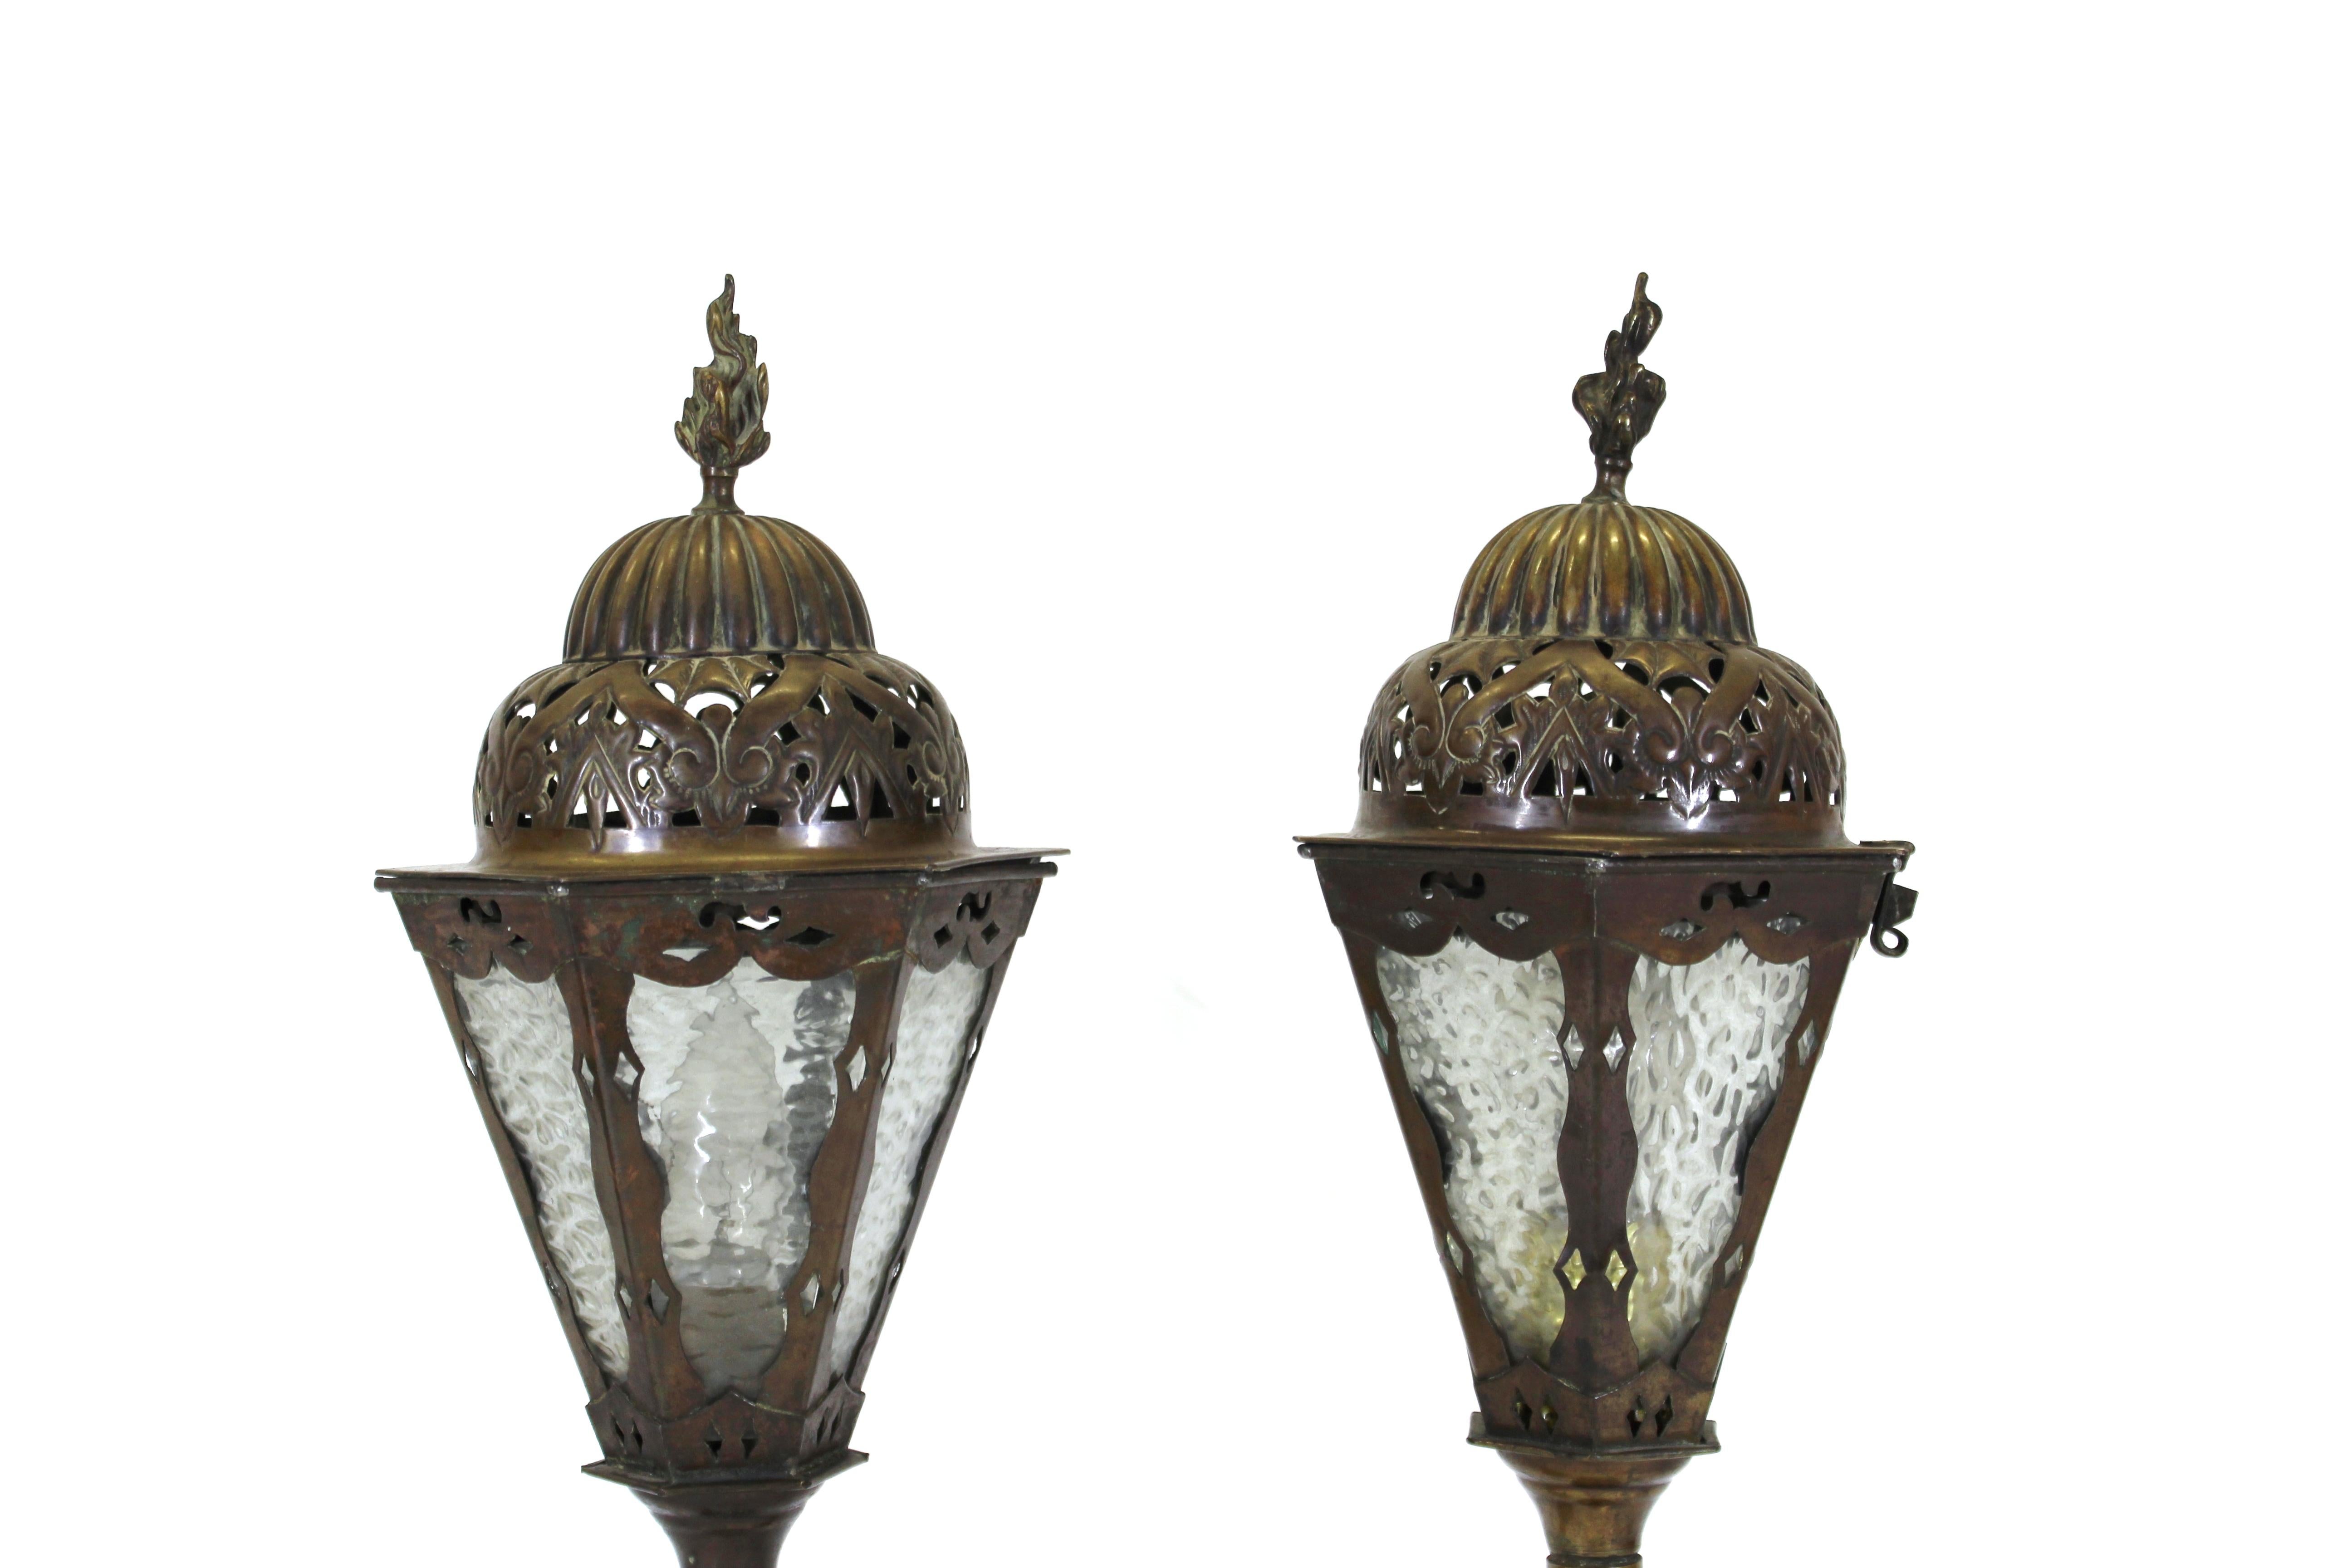 Paire de lampes de table lanternes de style néo-renaissance italienne en bronze moulé, avec des détails en laiton repoussé et des inserts en verre. Fabriquée à la main en Italie dans les années 1900, la paire est en remarquable état d'ancienneté,